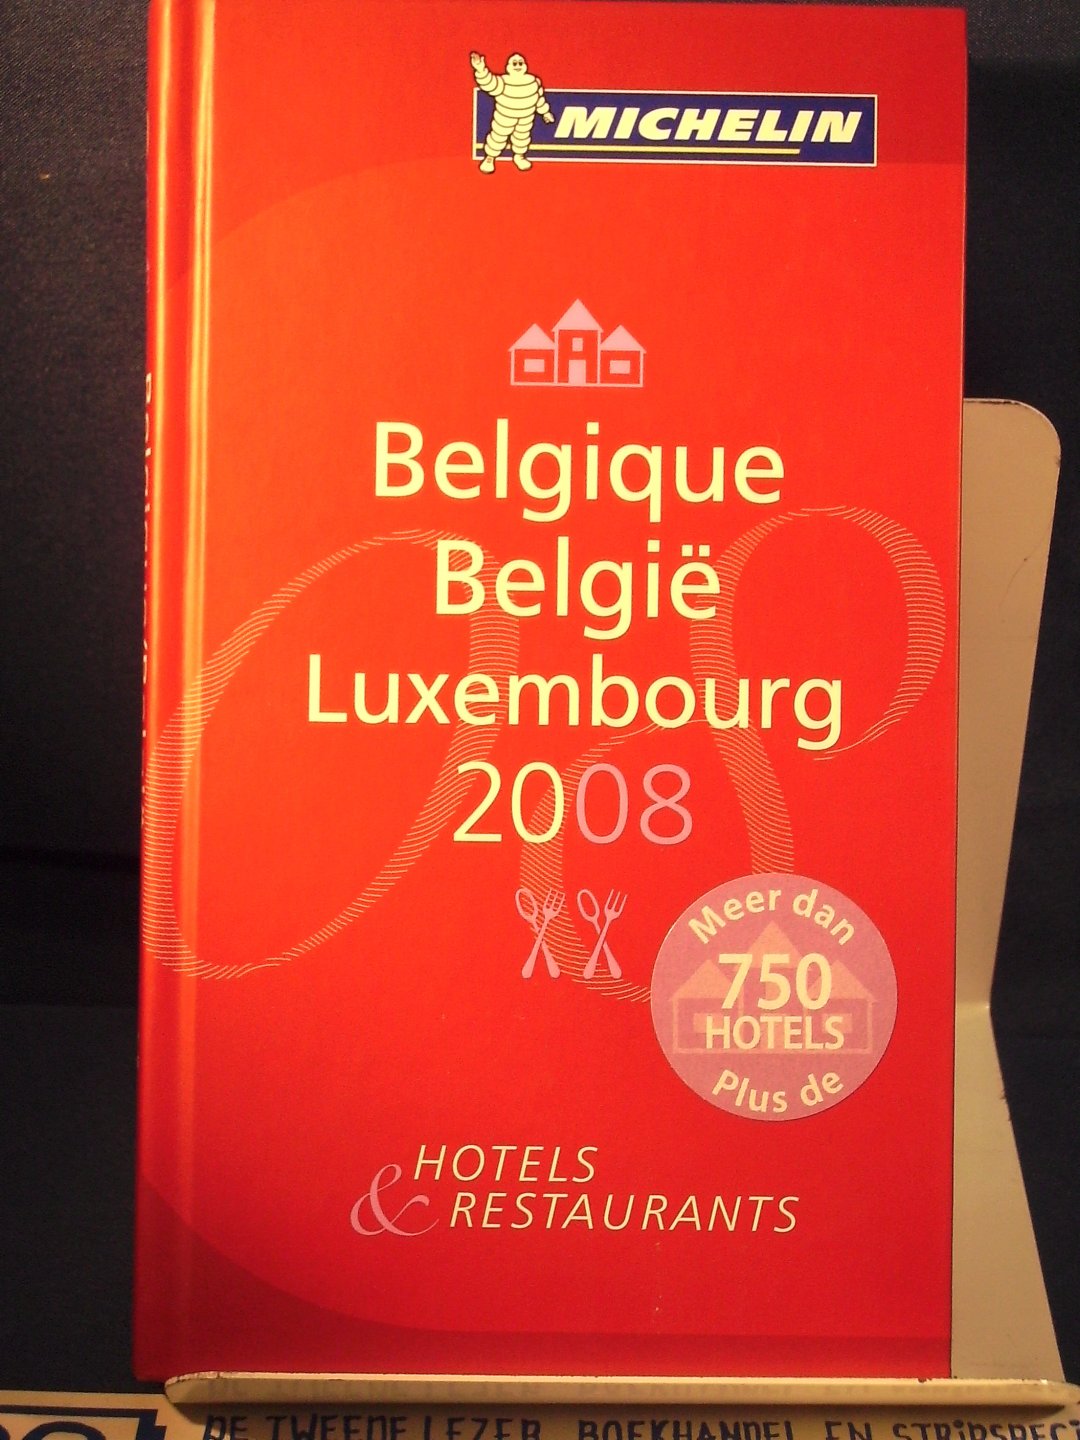 Michelin - Belgique/Belgie Luxembourg 2008 / hotels & restaurants Ned-Frans